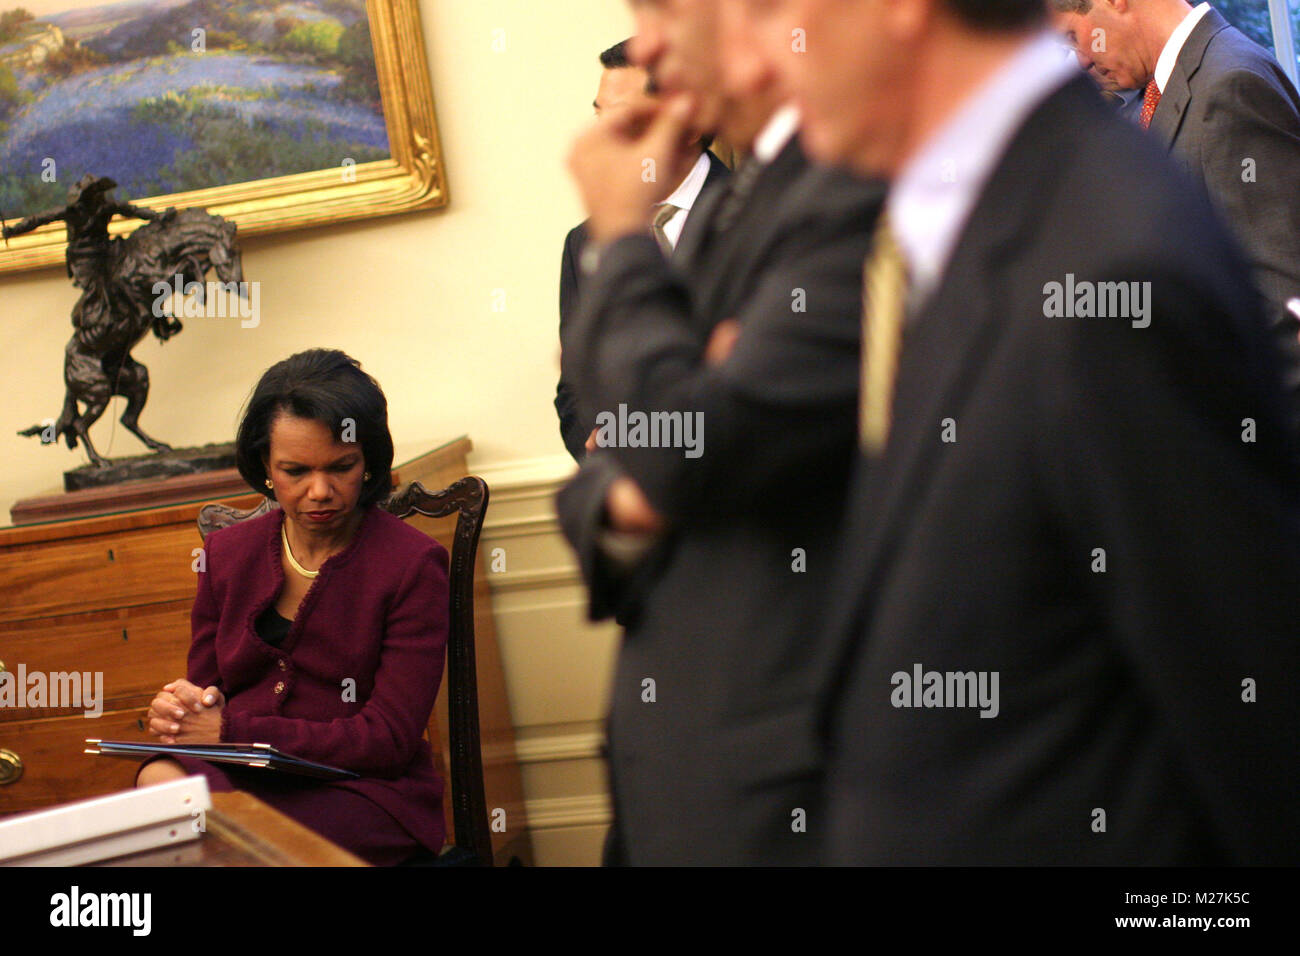 Washington, DC - 19 décembre 2008 -- La secrétaire d'État américaine, Condoleezza Rice est à l'écoute que le président des États-Unis George W. Bush rencontre le président Mahmoud Abbas (Abou Mazen) de l'Autorité palestinienne dans le bureau ovale de la Maison Blanche à Washington DC le vendredi, 19 décembre 2008..Credit : Ken Cedeno / Piscine via CNP /MediaPunch Banque D'Images